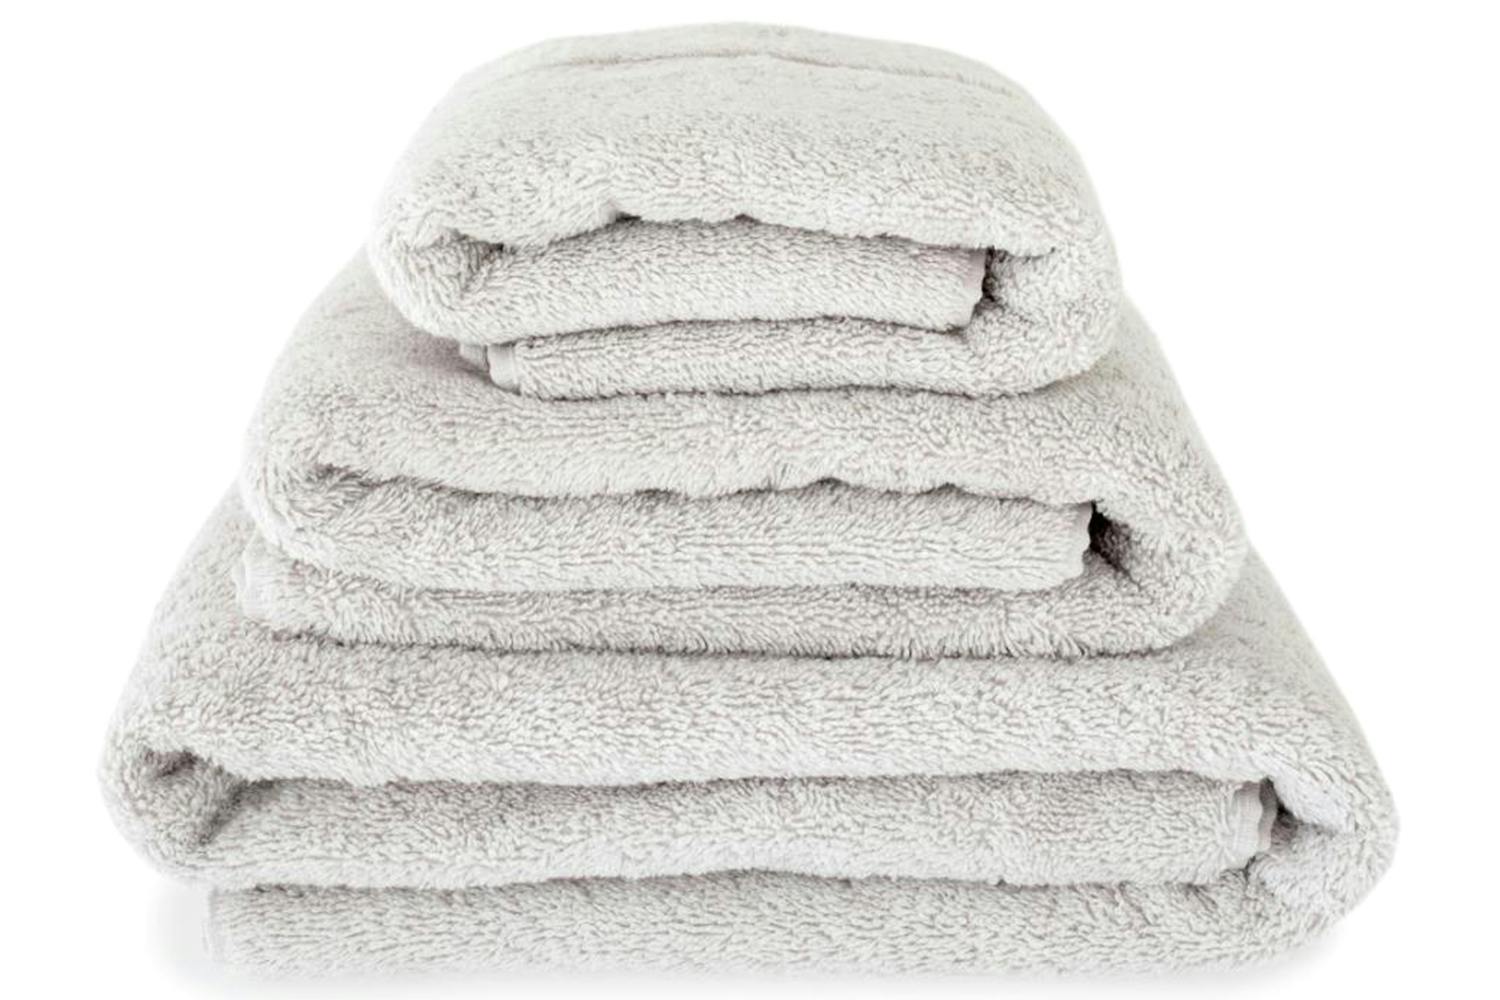 The Linen Room | Bath Towel | Dove